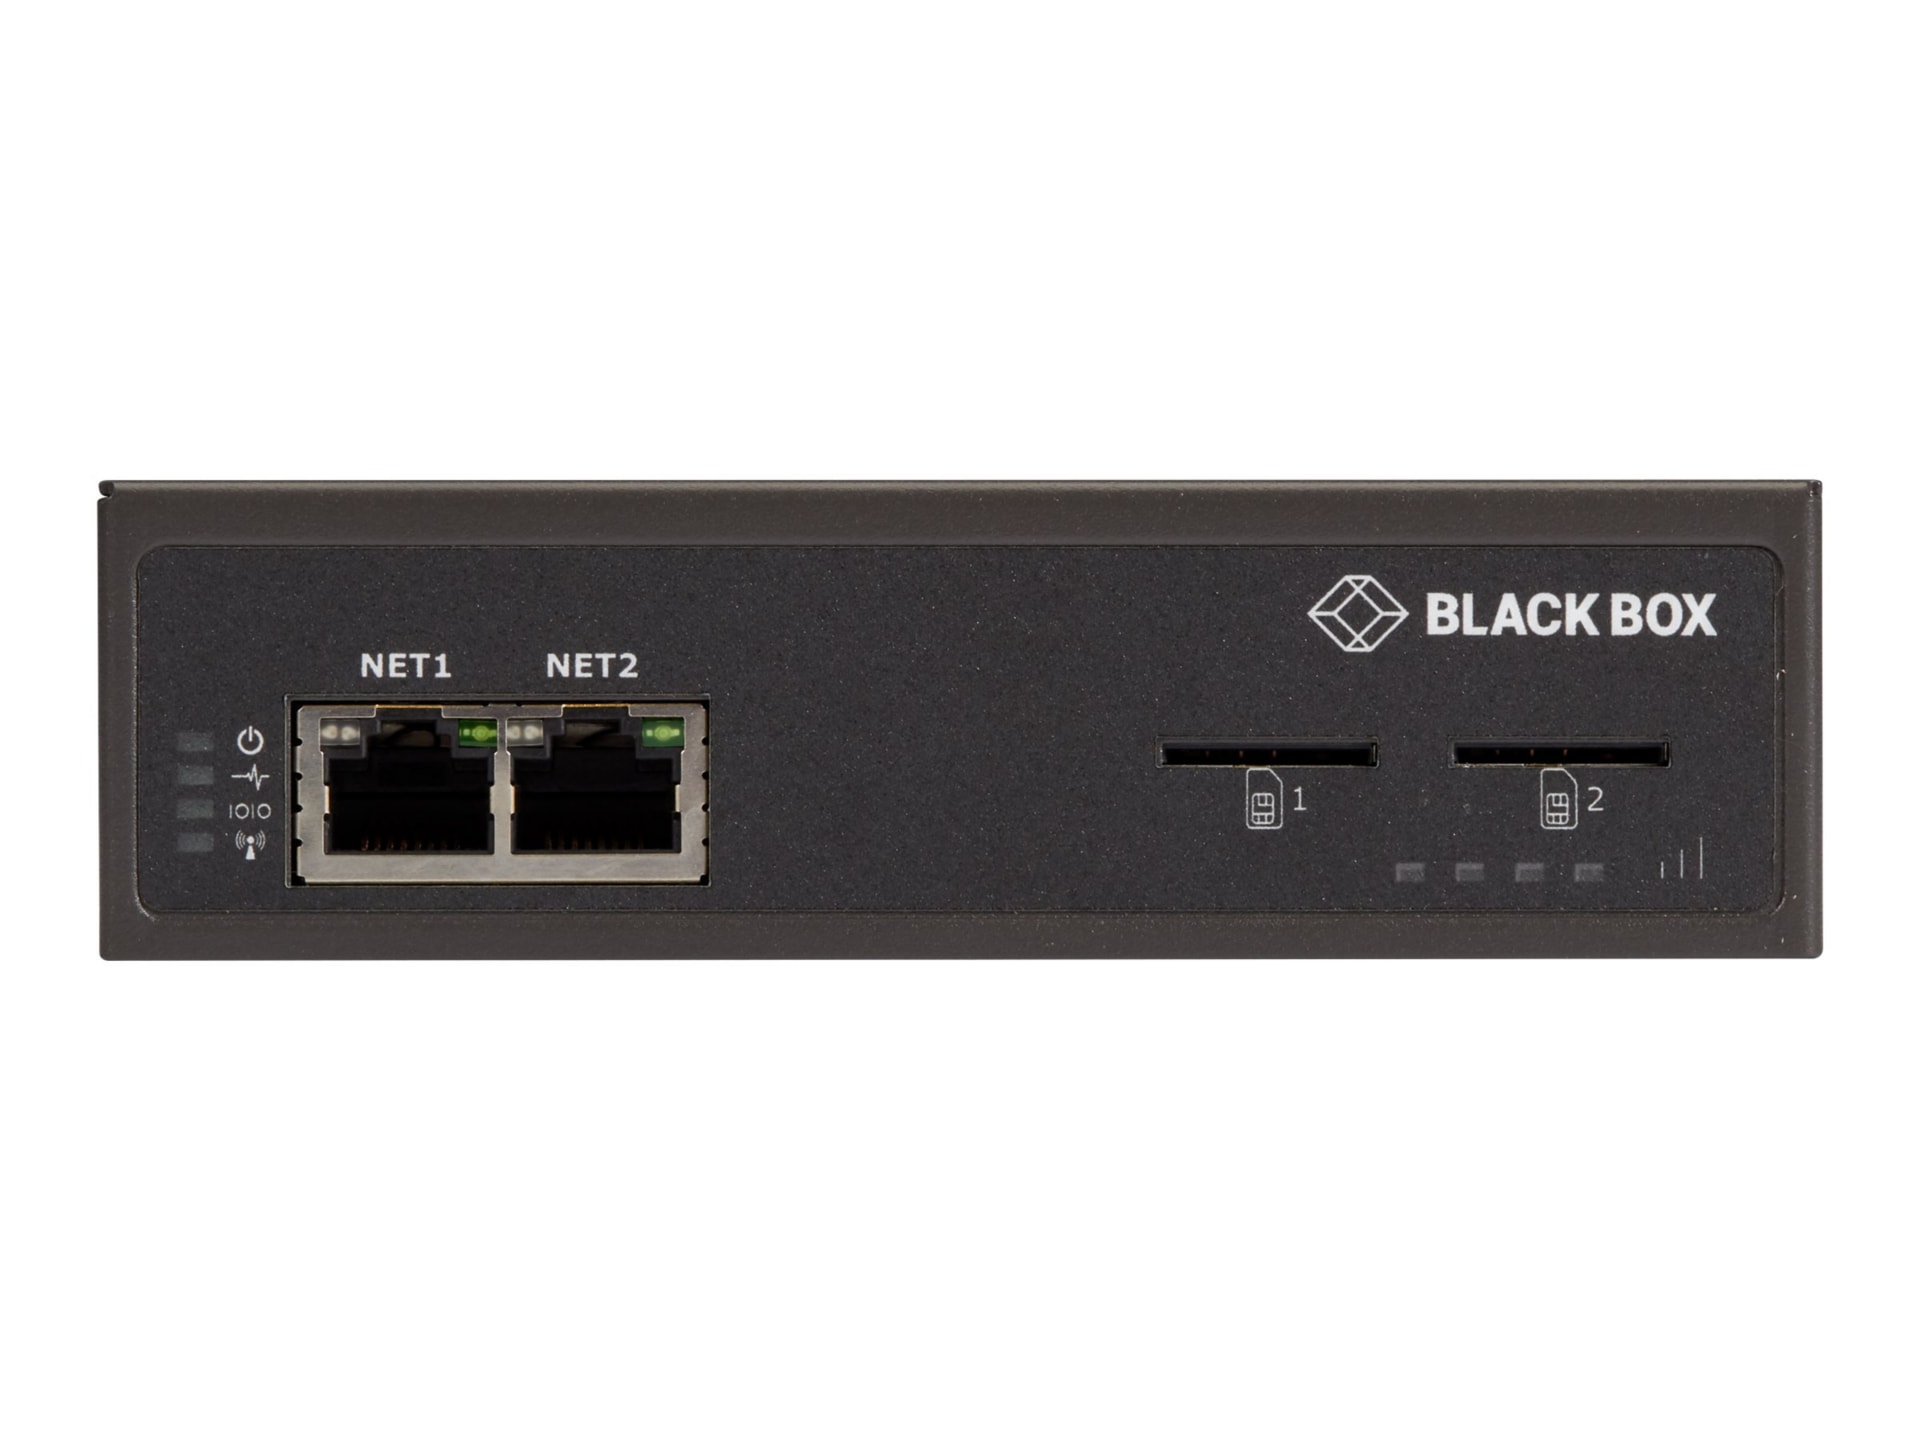 Black Box Console Server - 4G LTE Modem, Cisco Pinout, US/ROW Cellular, 4PT